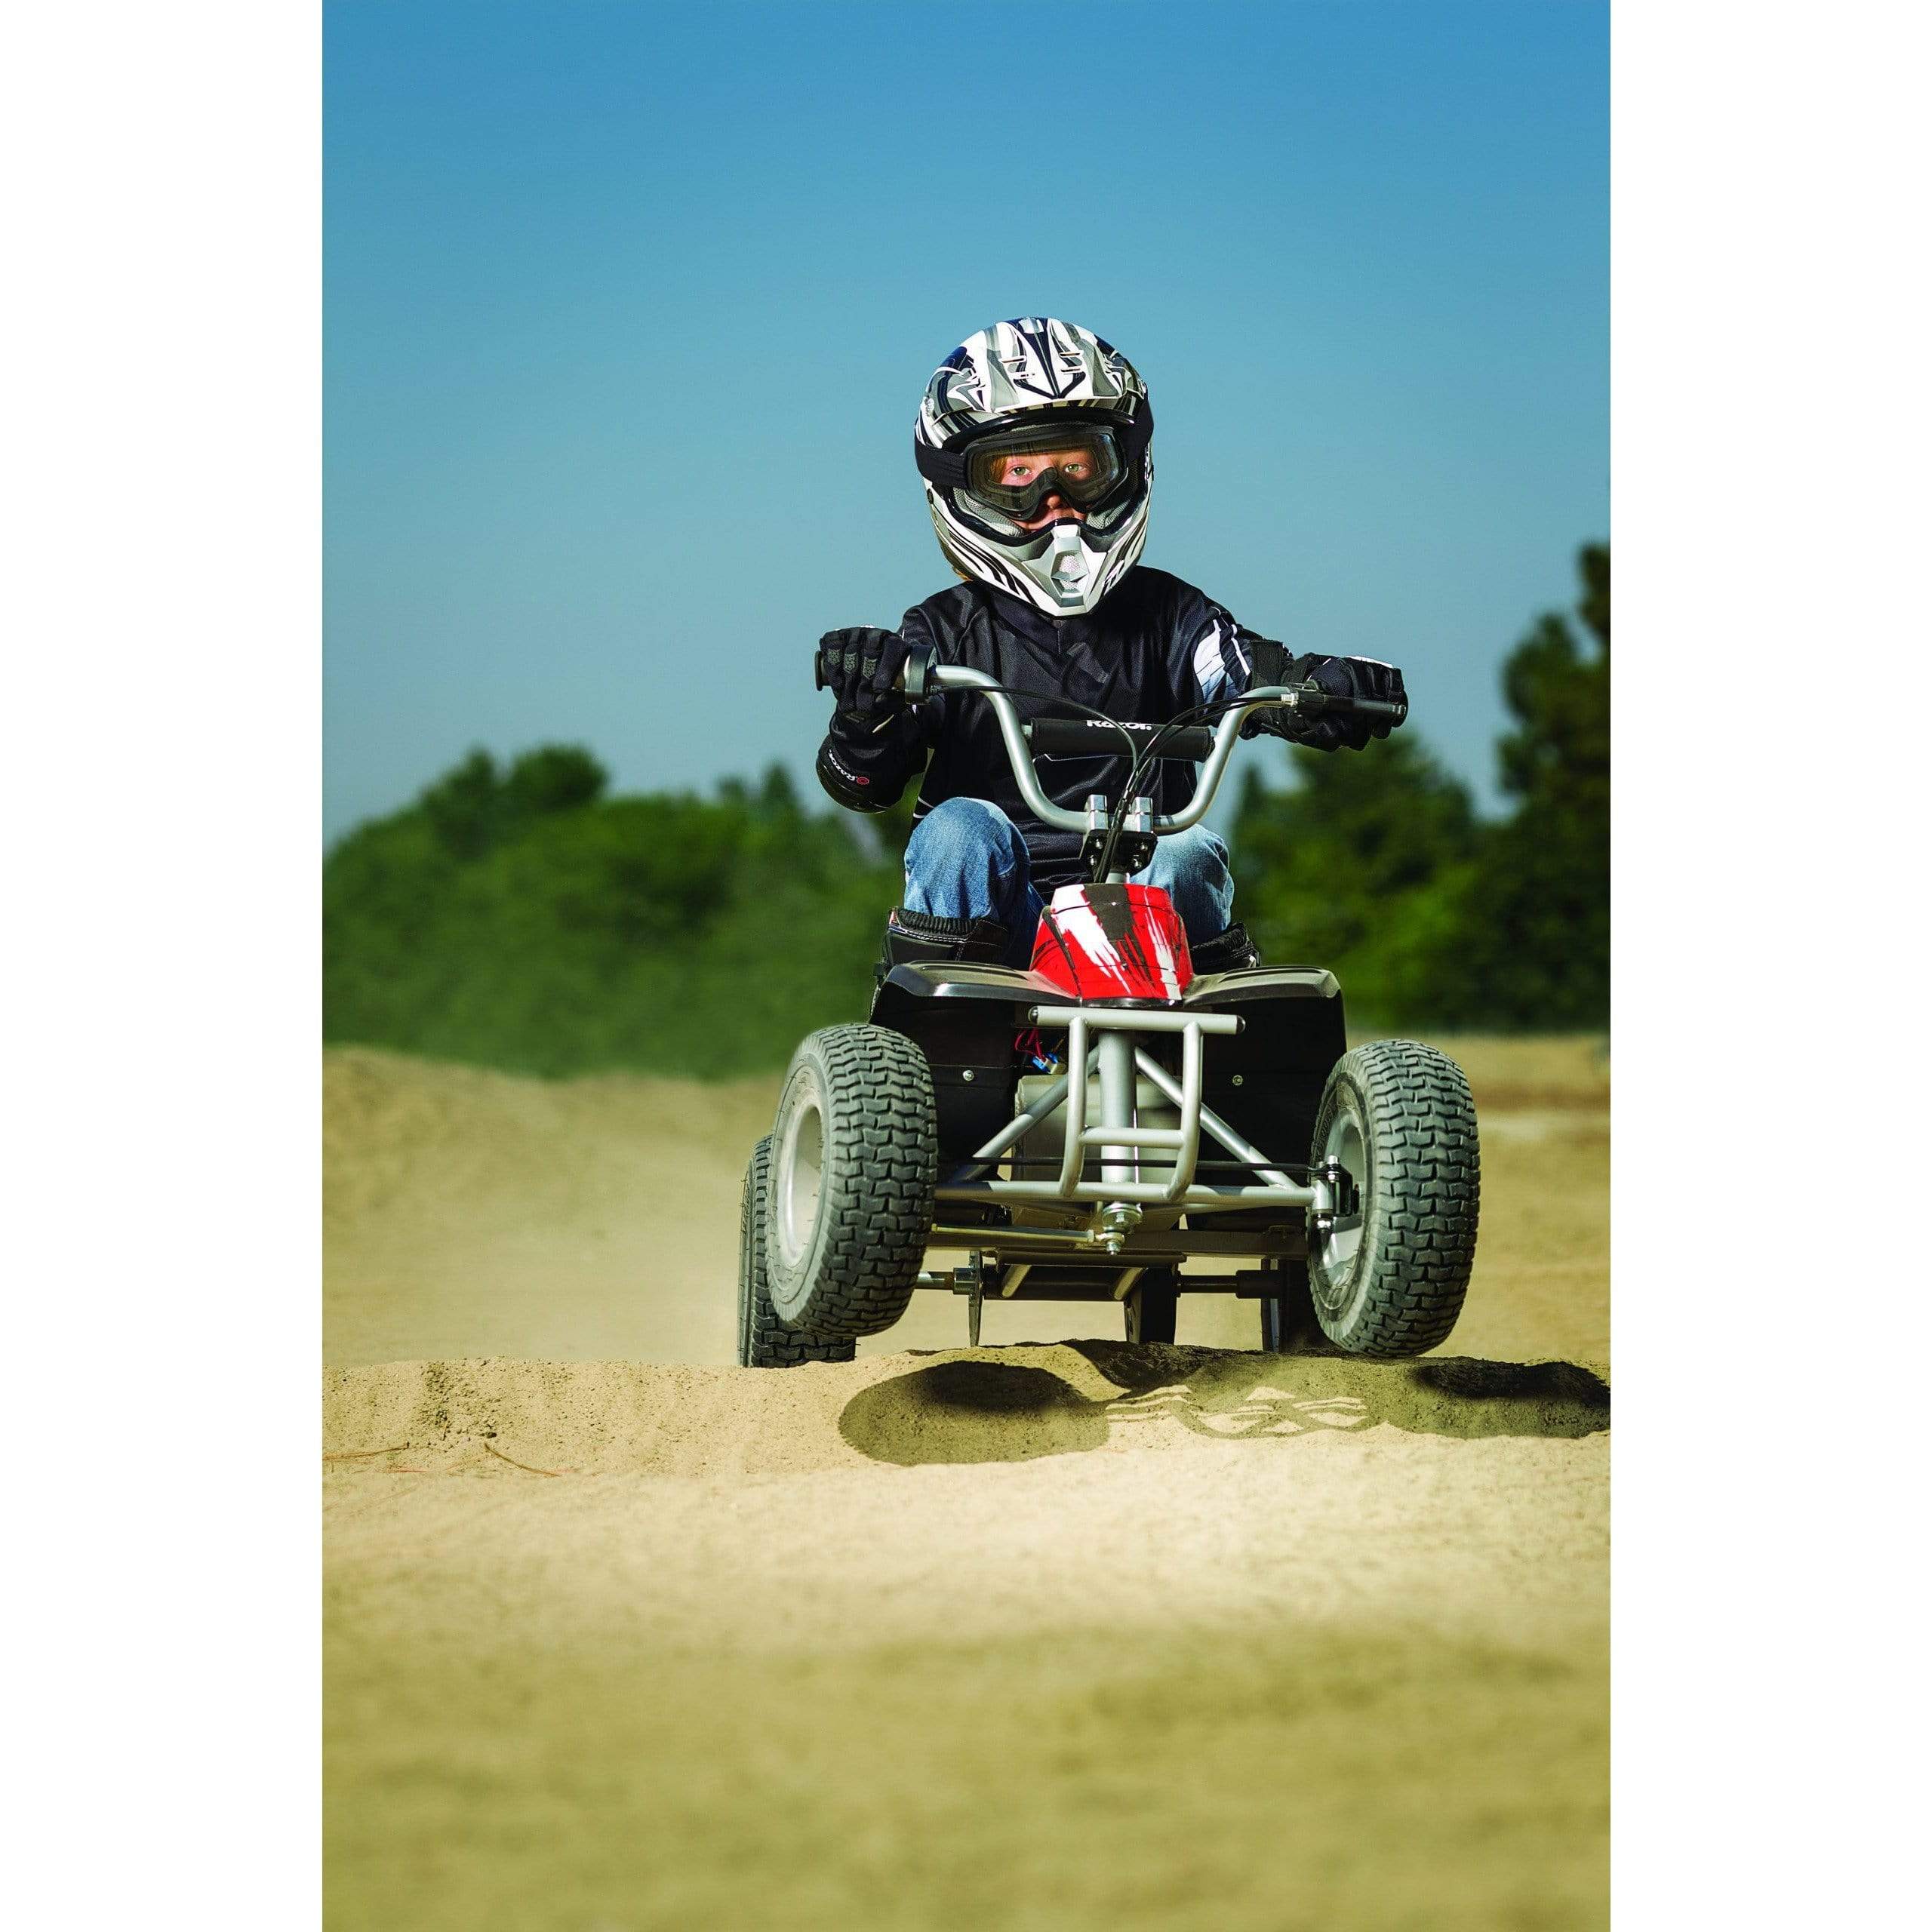 Razor Dirt Quad 24V Four-Wheeled Off-Road Kids Electric ATV RZ-DQ